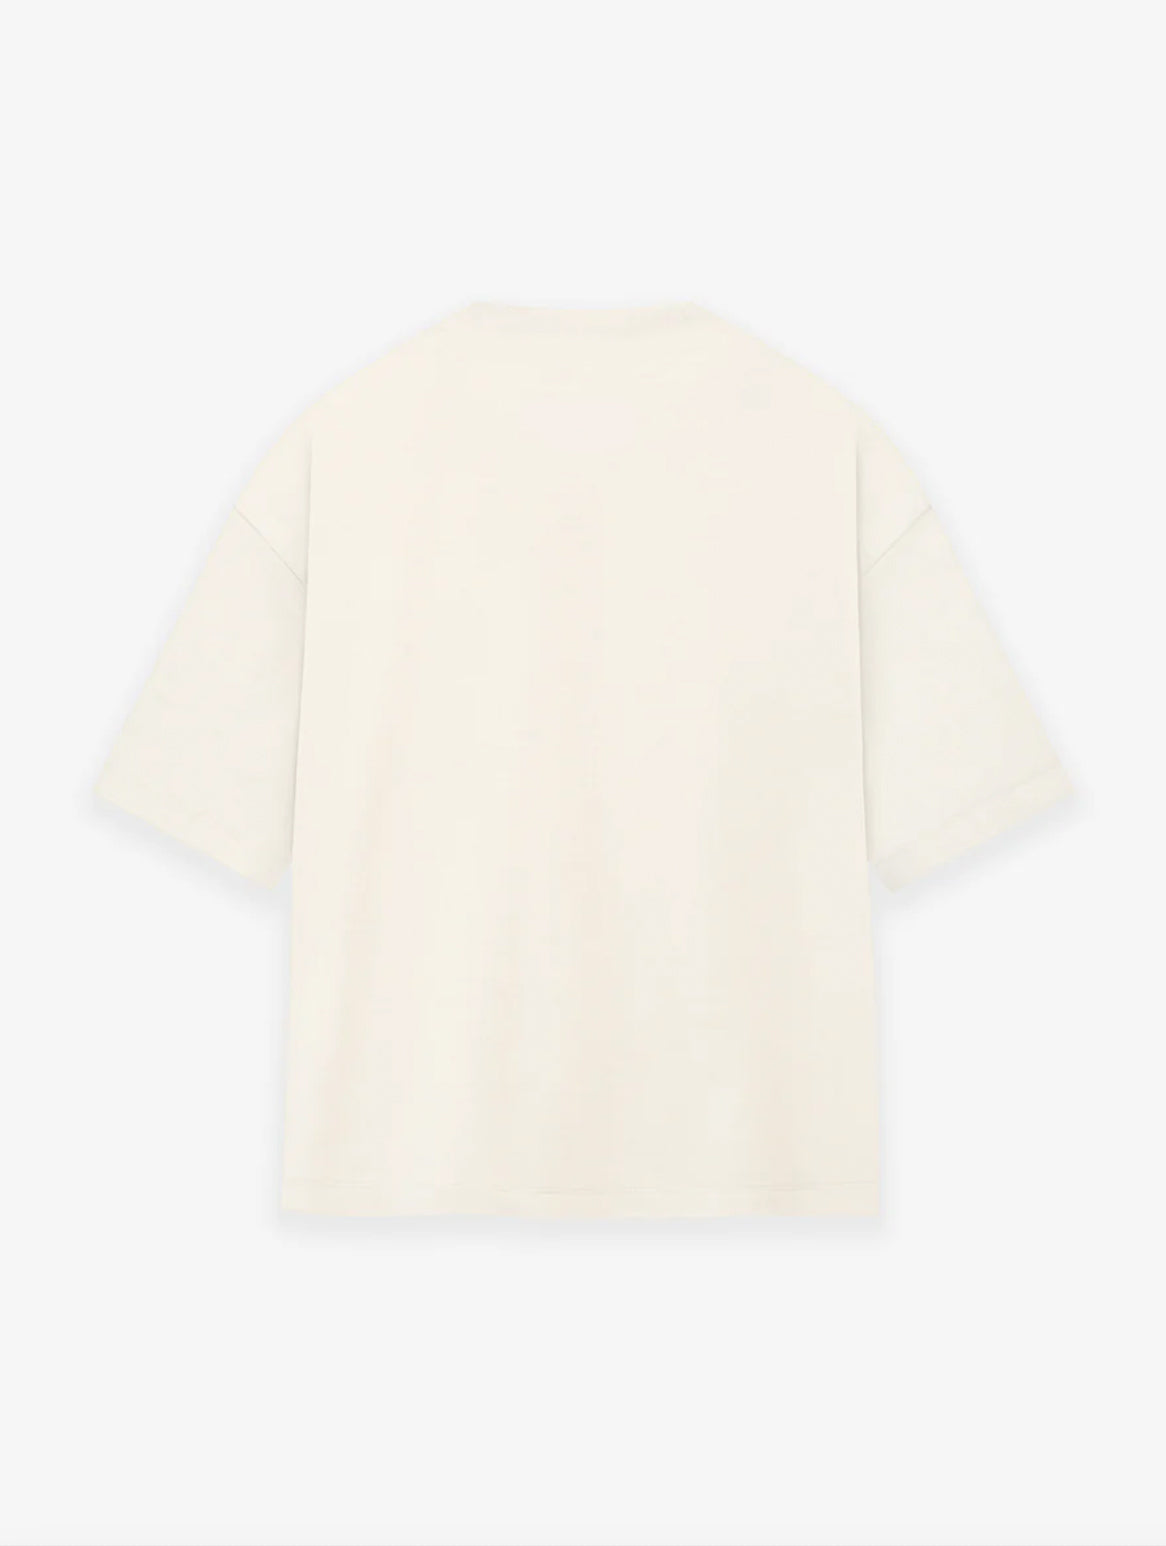 Kobe hundredtags strap white oversized T-shirt